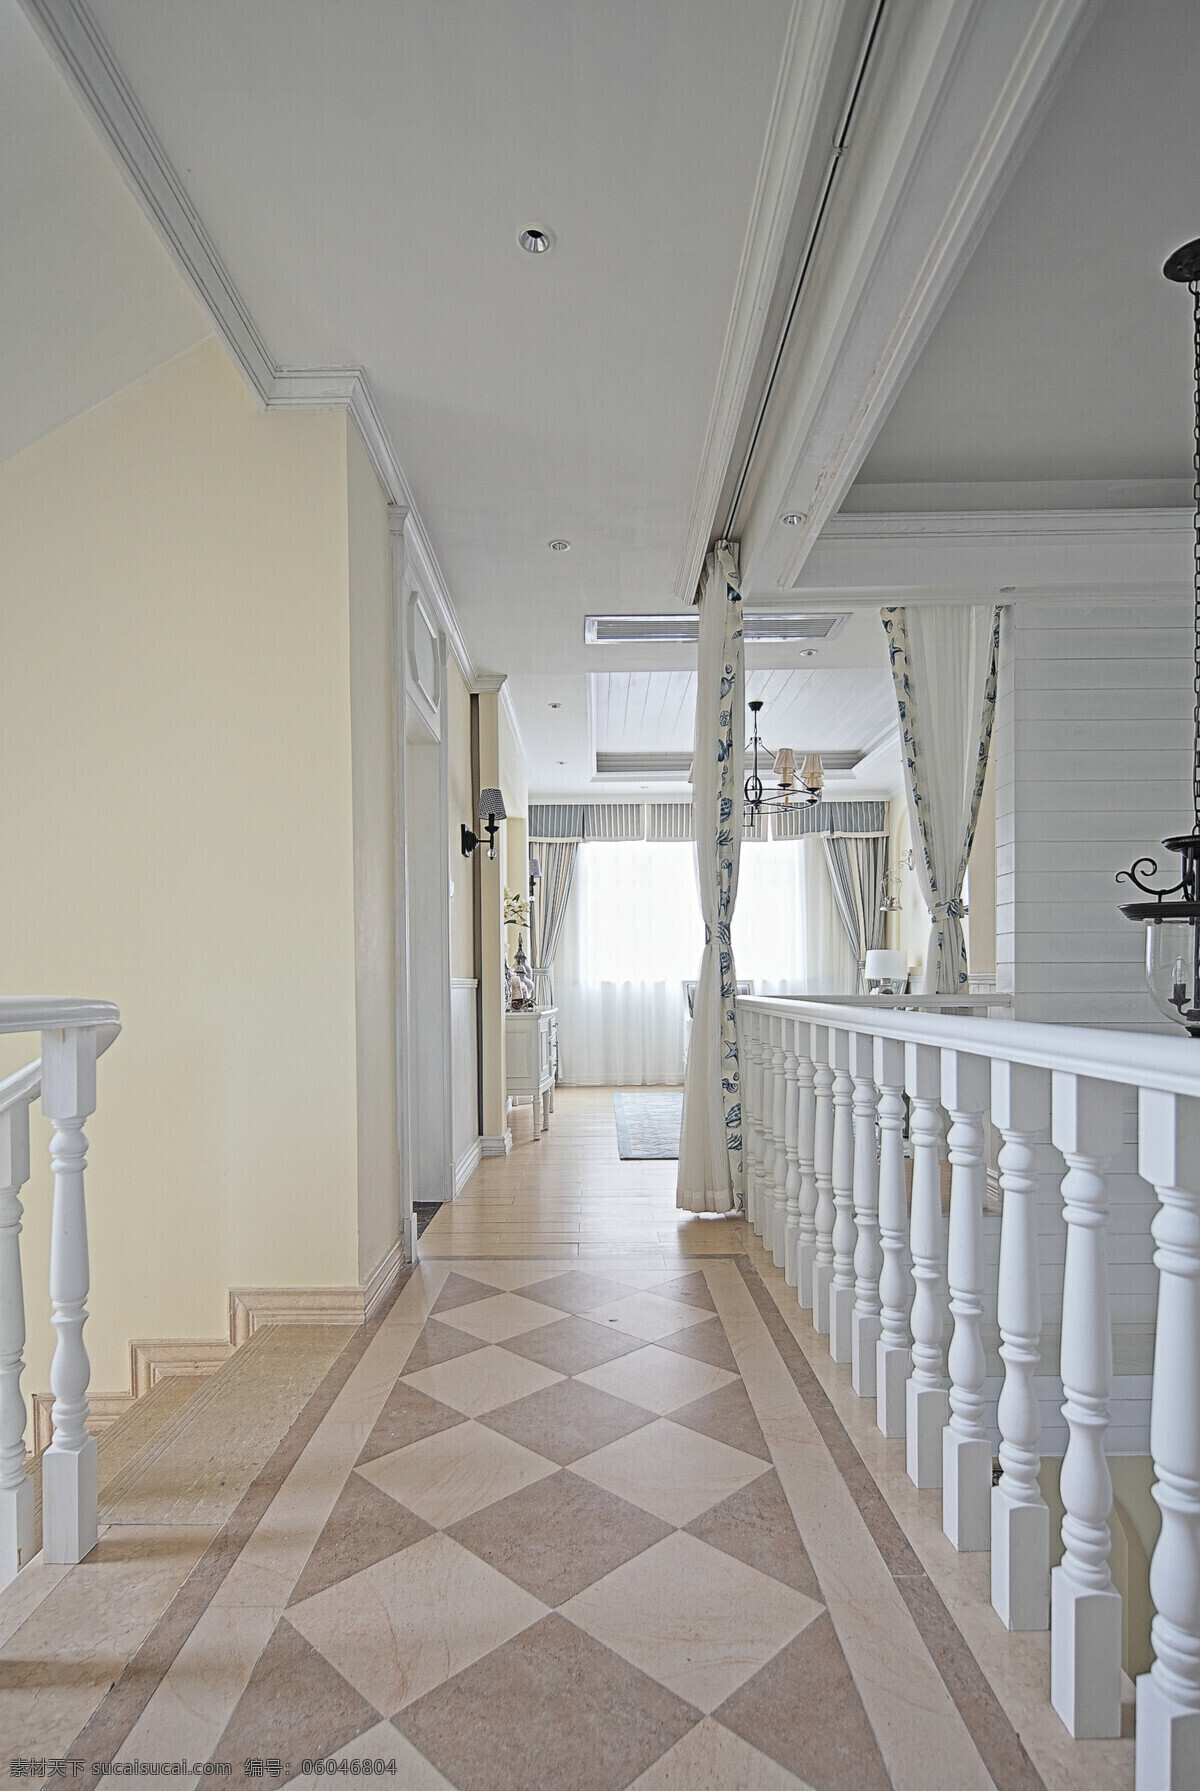 楼 中楼 格子 地板 走廊 室内装修 效果图 白色栏杆 走廊装修 瓷砖地板 纯色背景墙